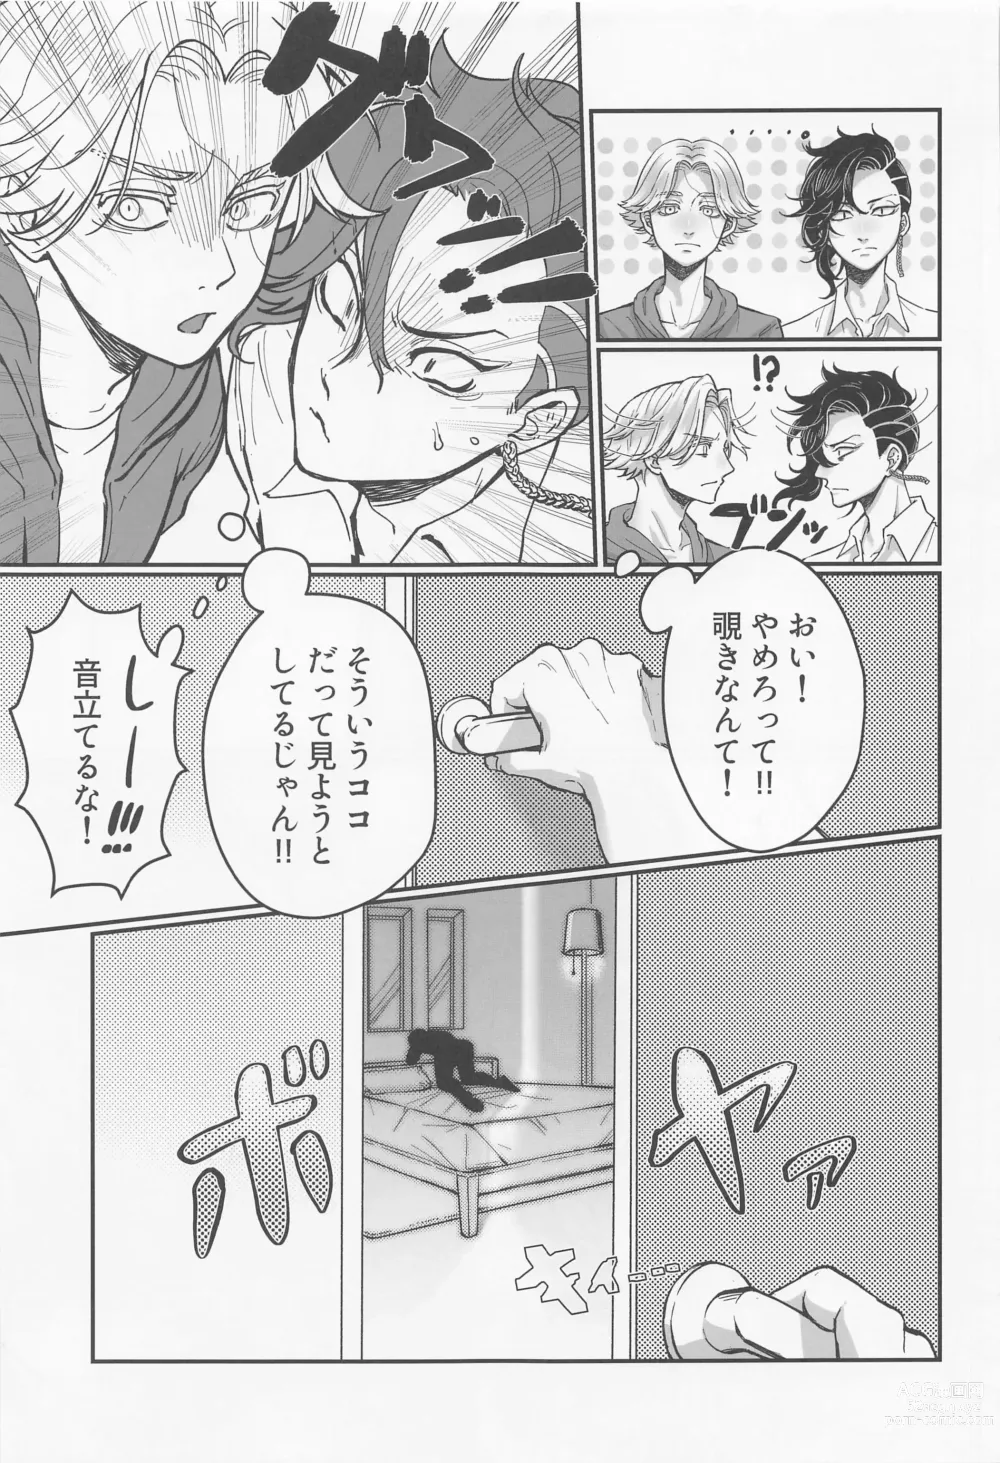 Page 10 of doujinshi Okusuri no Sei